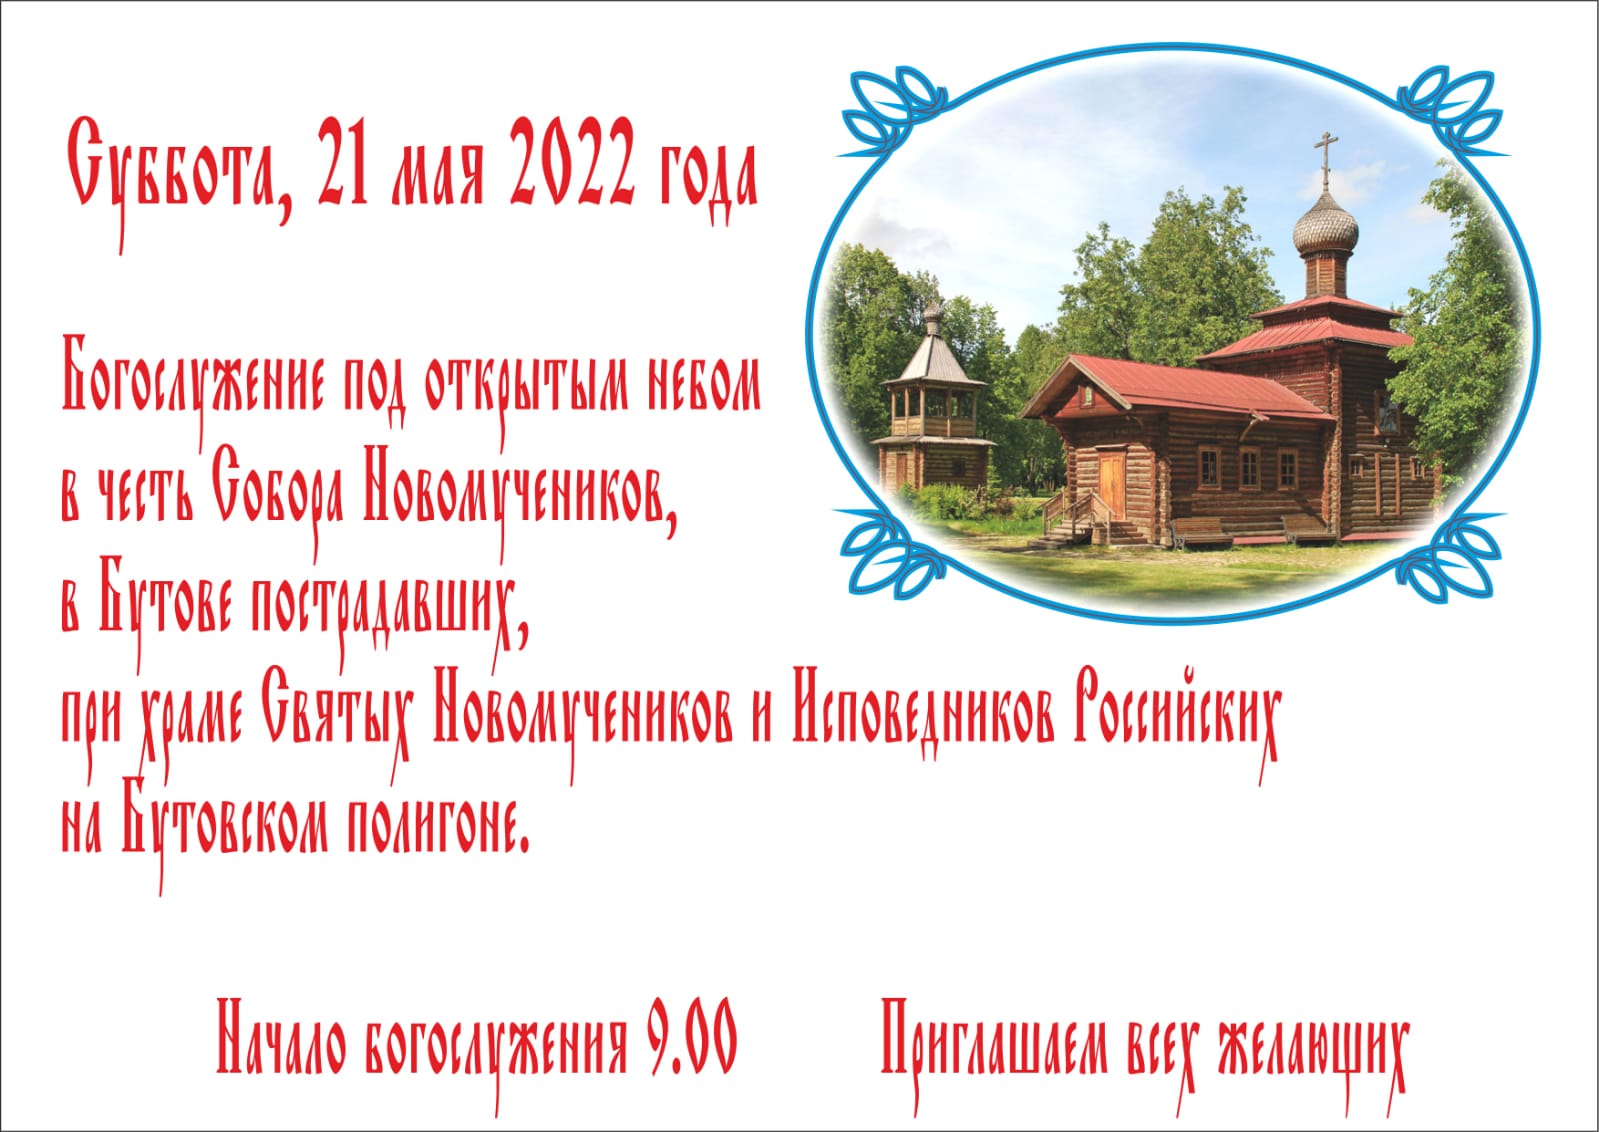 4 мая православный. Новомученики в Бутове пострадавших. День памяти Бутовских новомучеников в храме.